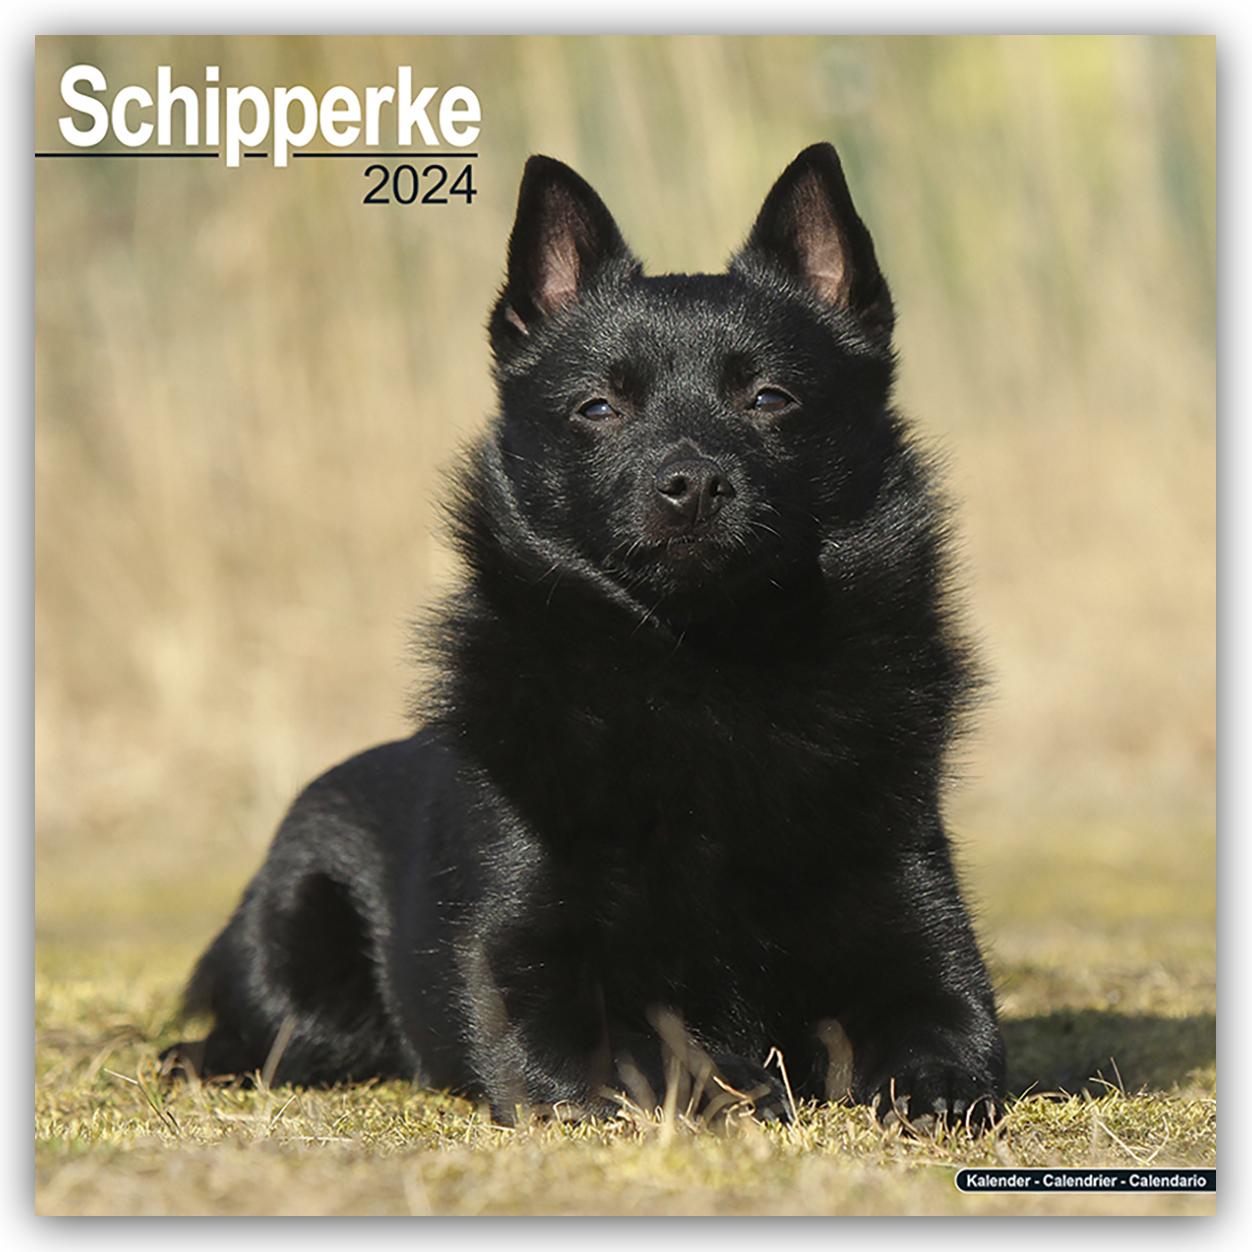 Calendar / Agendă Schipperke Calendar 2024  Square Dog Breed Wall Calendar - 16 Month 